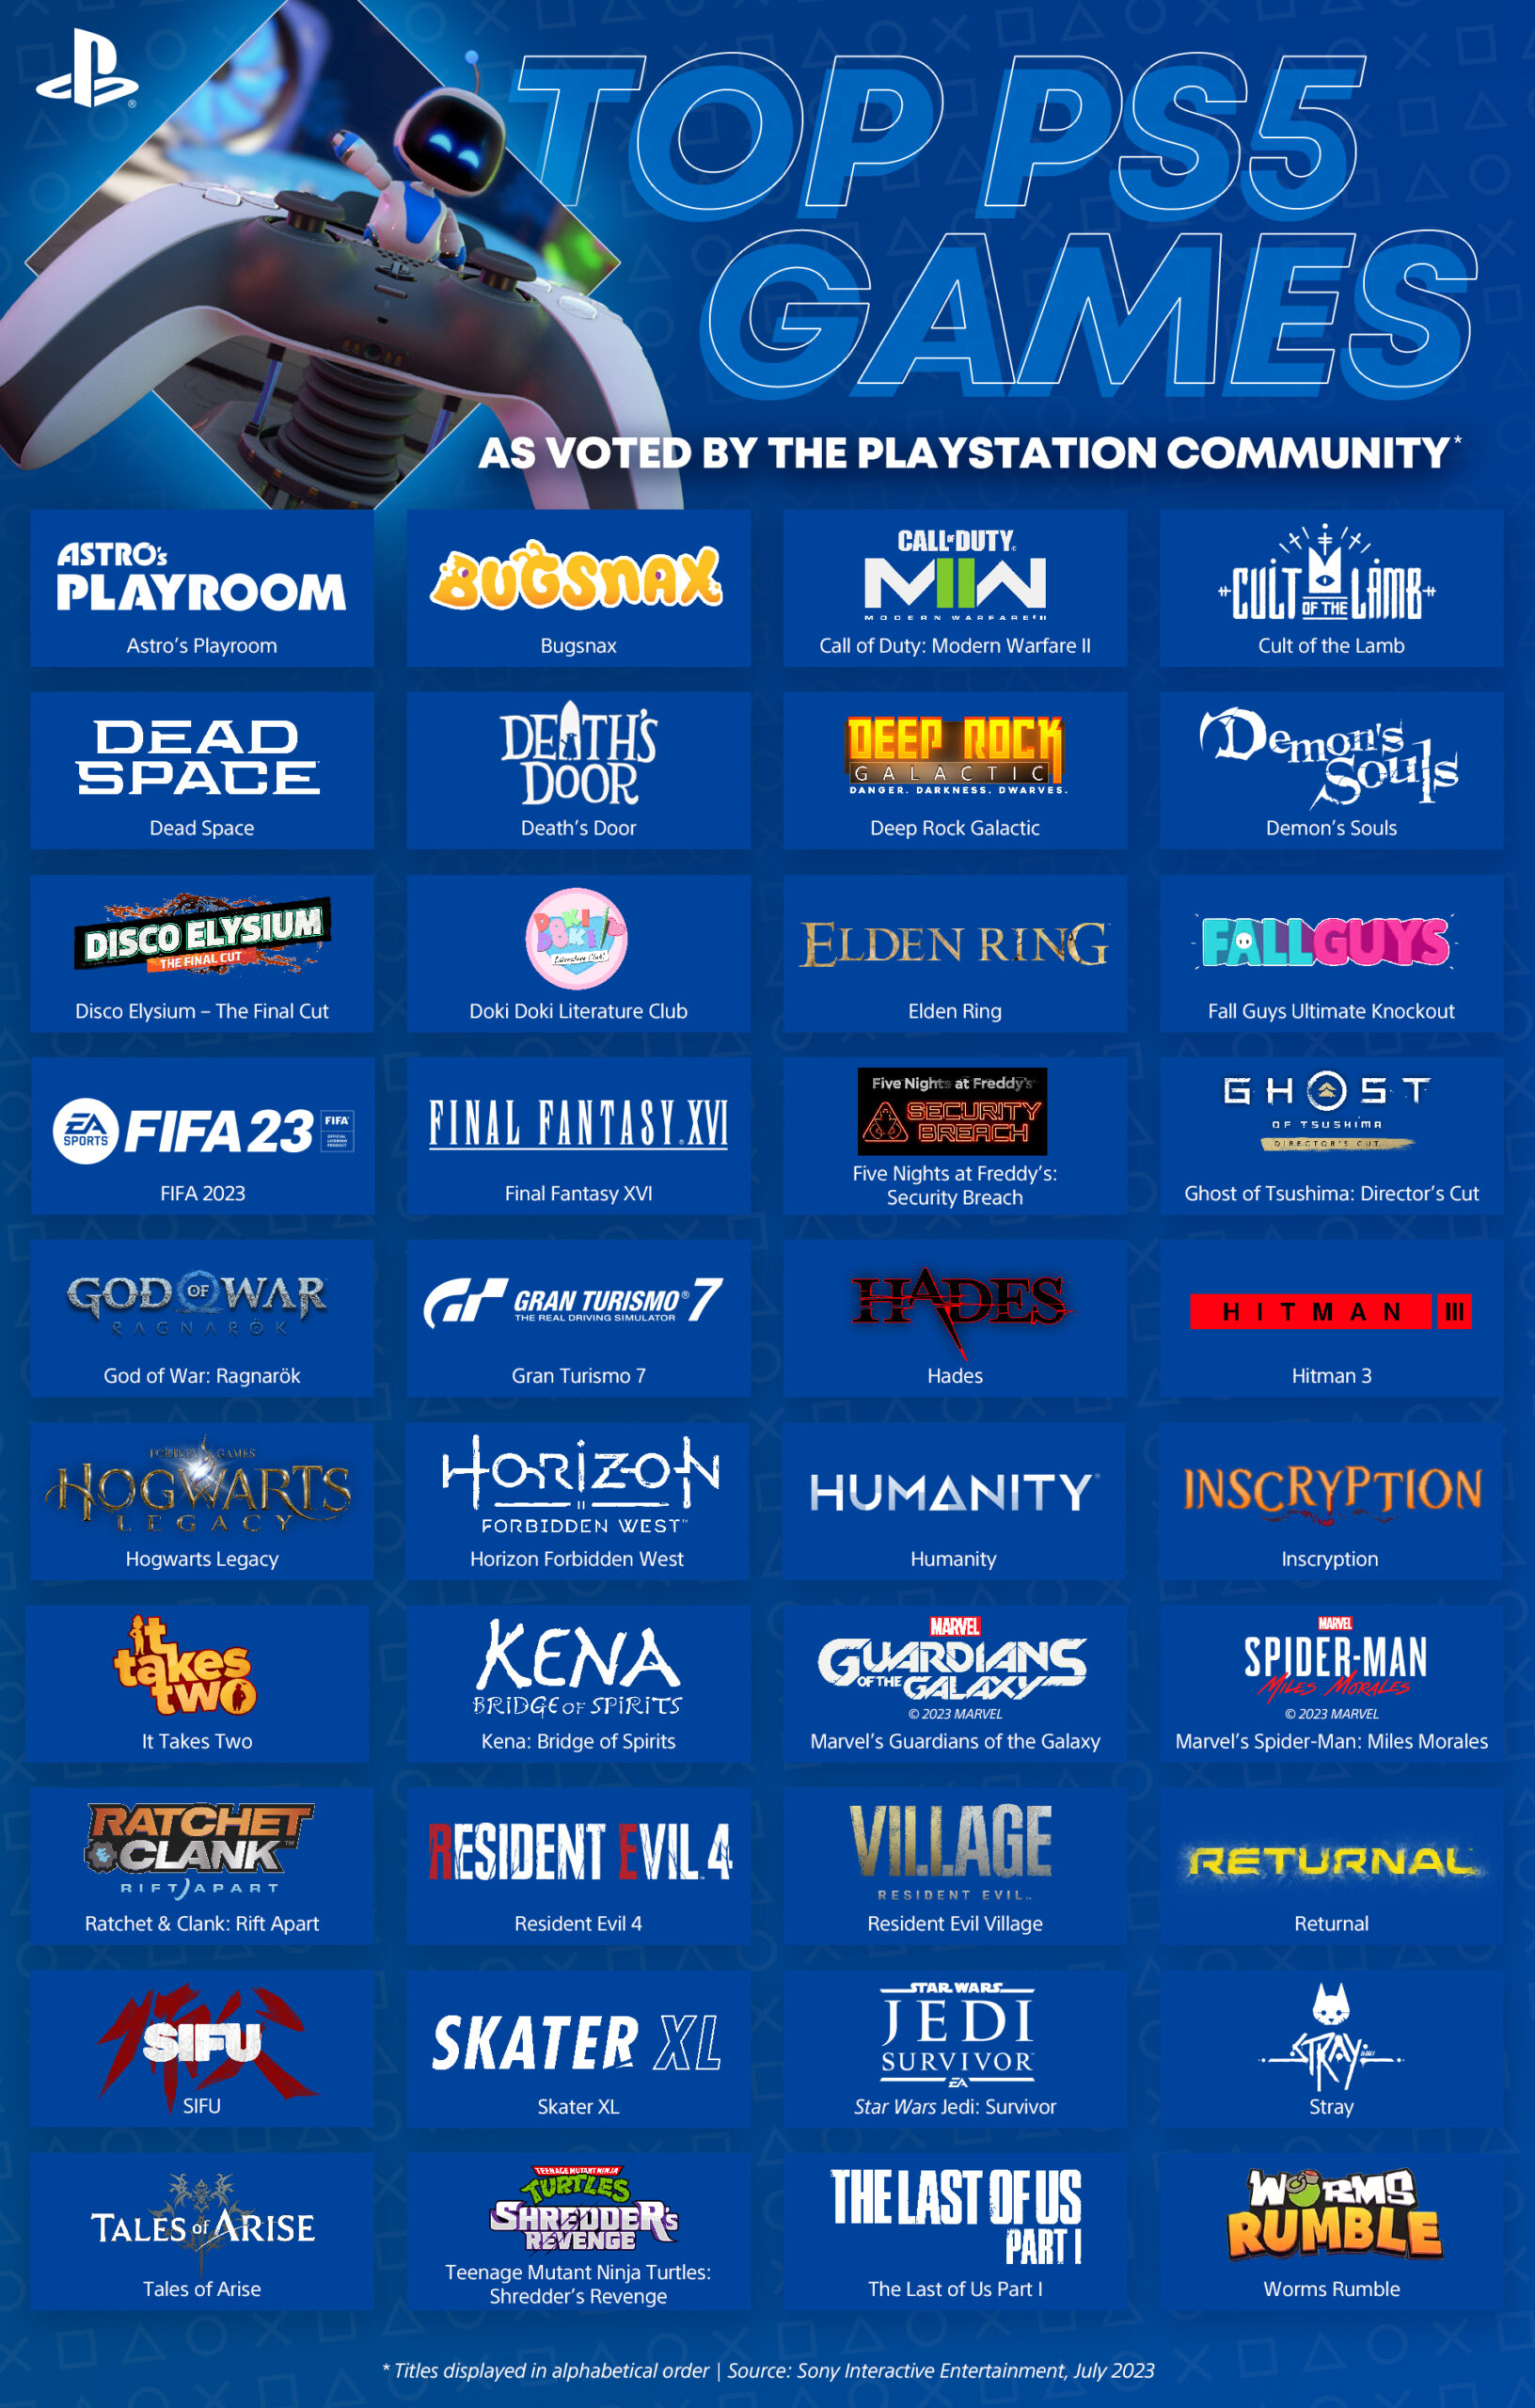  "Lista de los 40 juegos más votados por la comunidad PlayStation ordenados alfabéticamente."